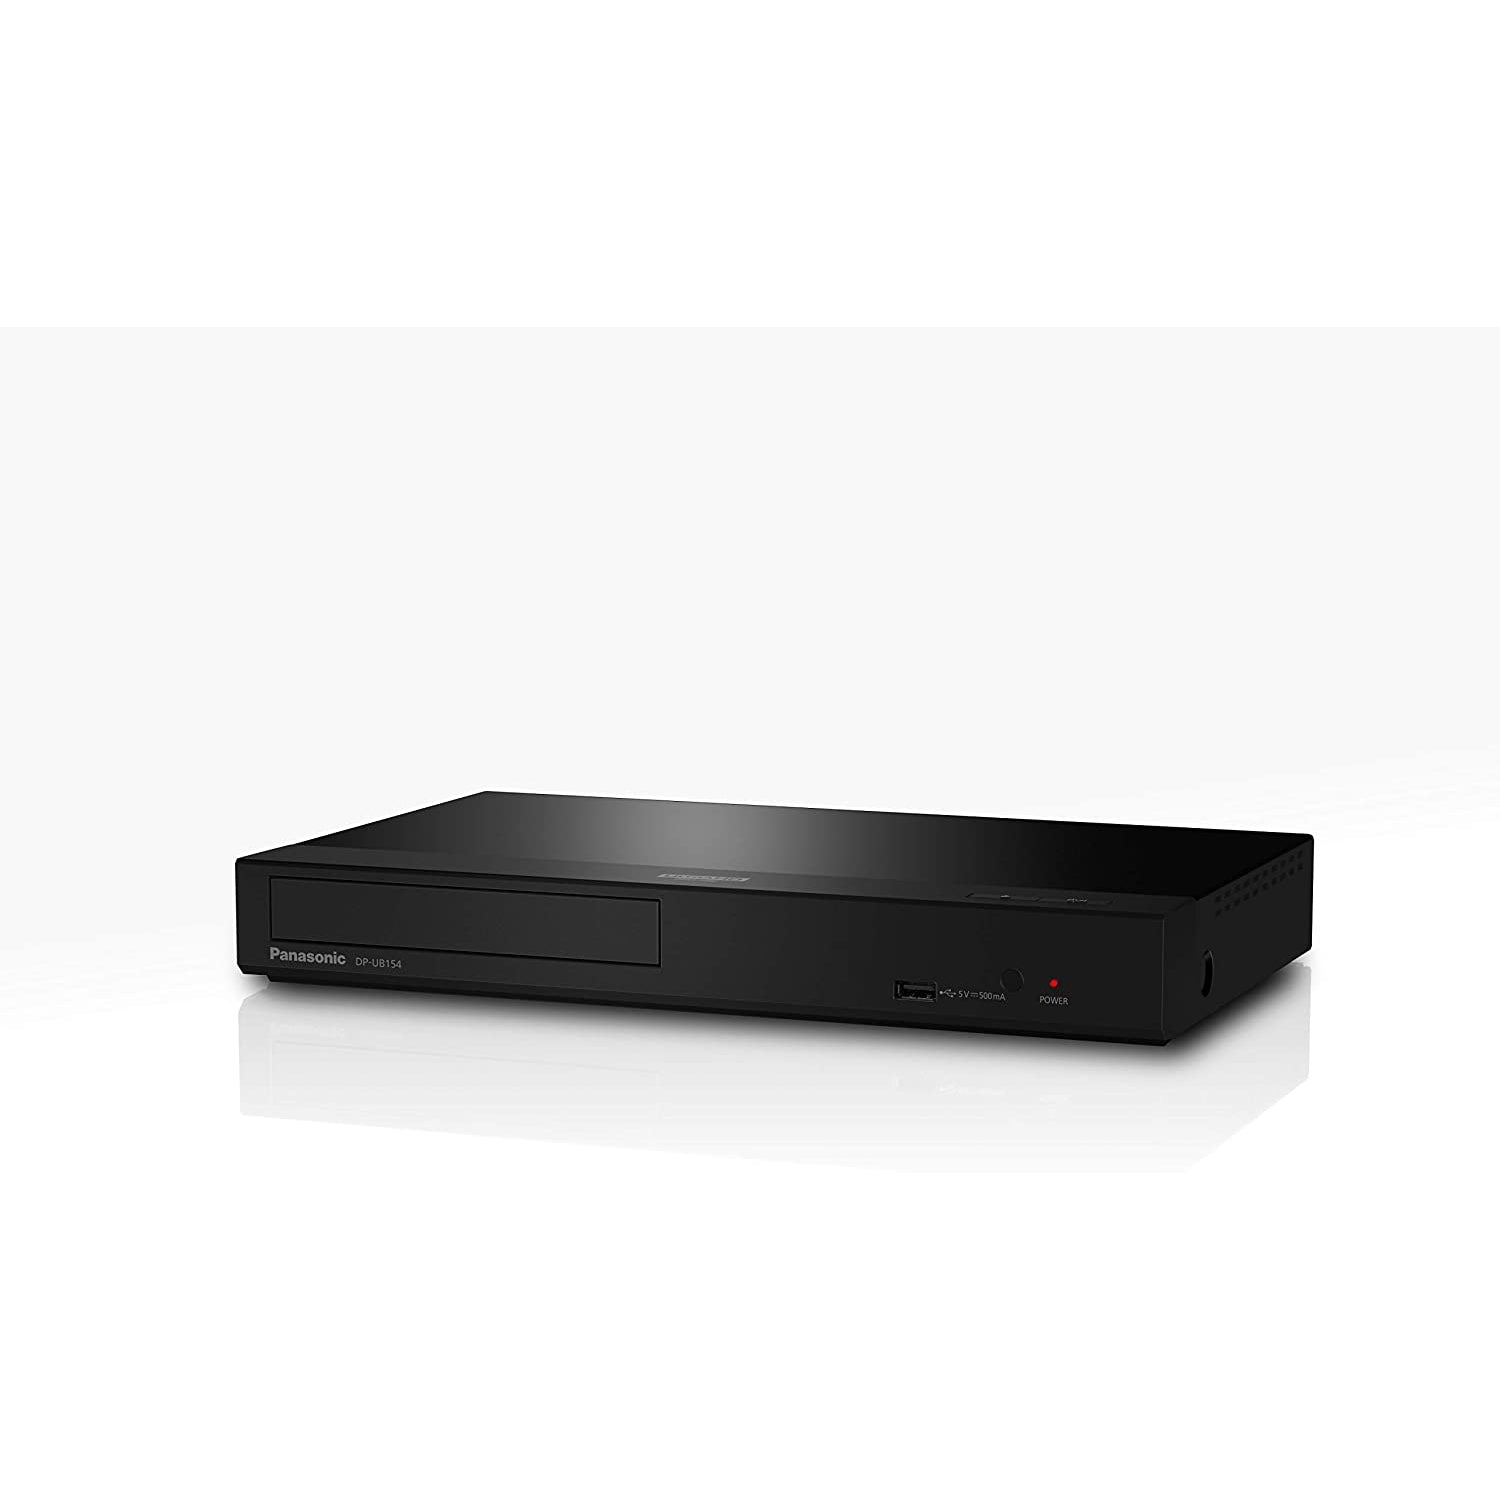 Panasonic DP-UB154EG-K Ultra HD Blu-ray Player in Black (HDR10+, 4K Blu-ray Disc, 4K VoD, Dolby Atmos, HDMI, USB)